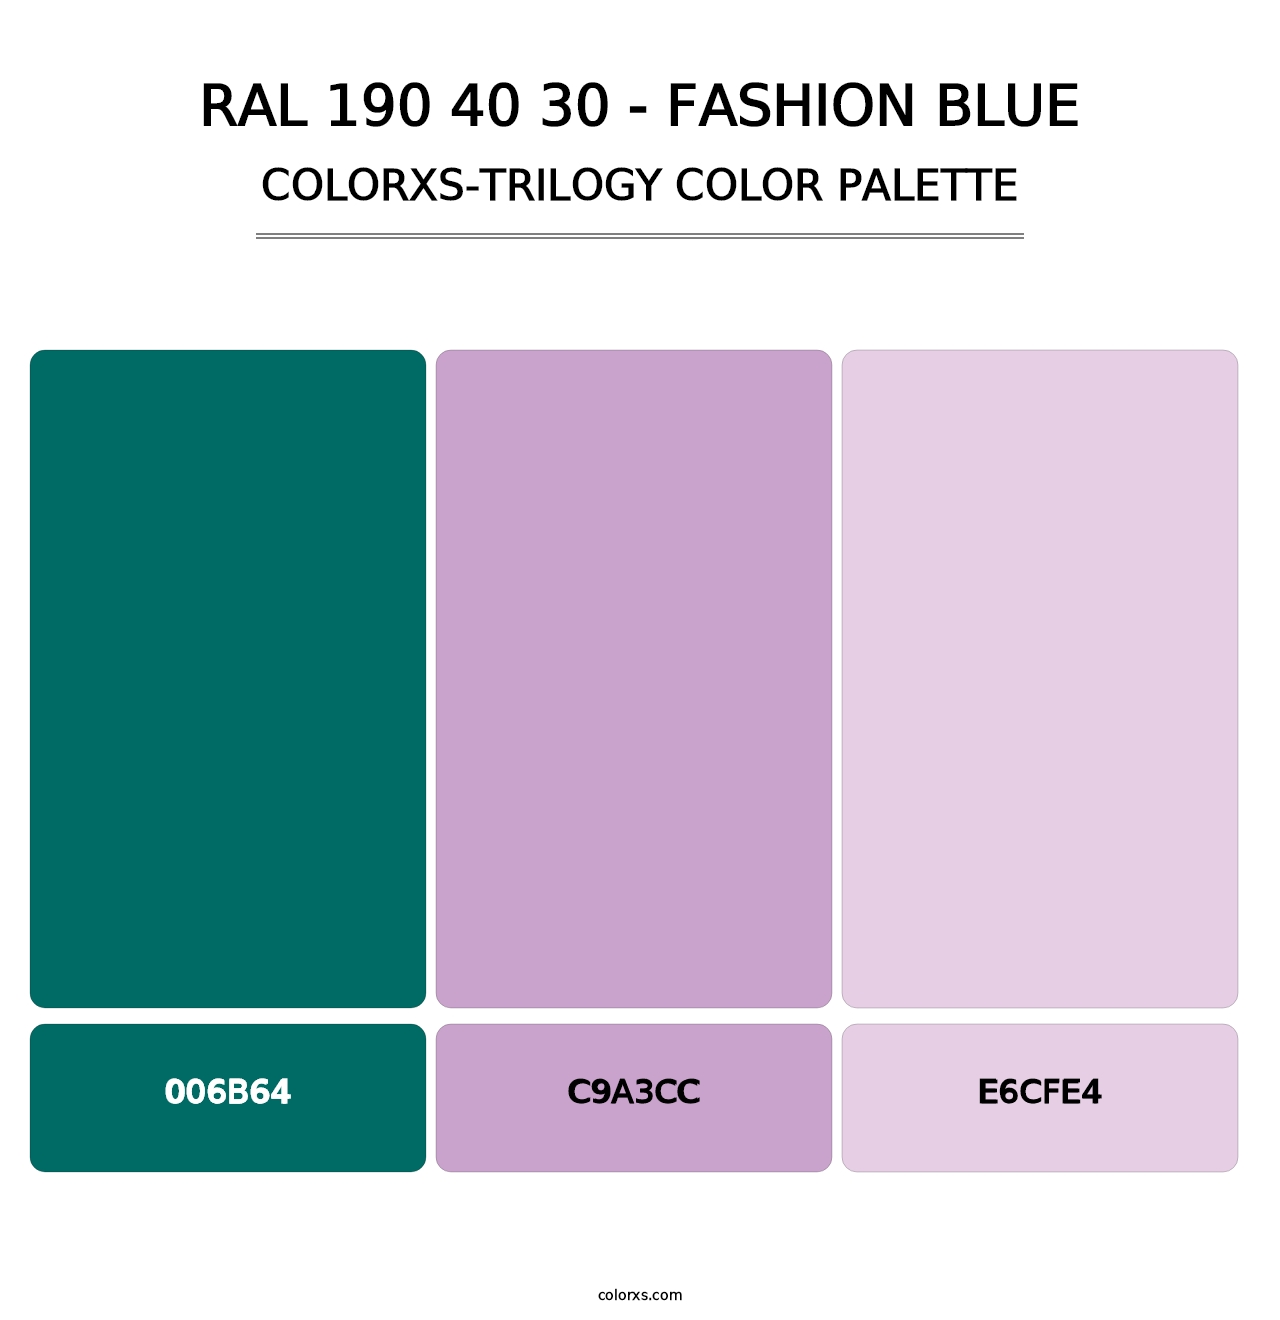 RAL 190 40 30 - Fashion Blue - Colorxs Trilogy Palette